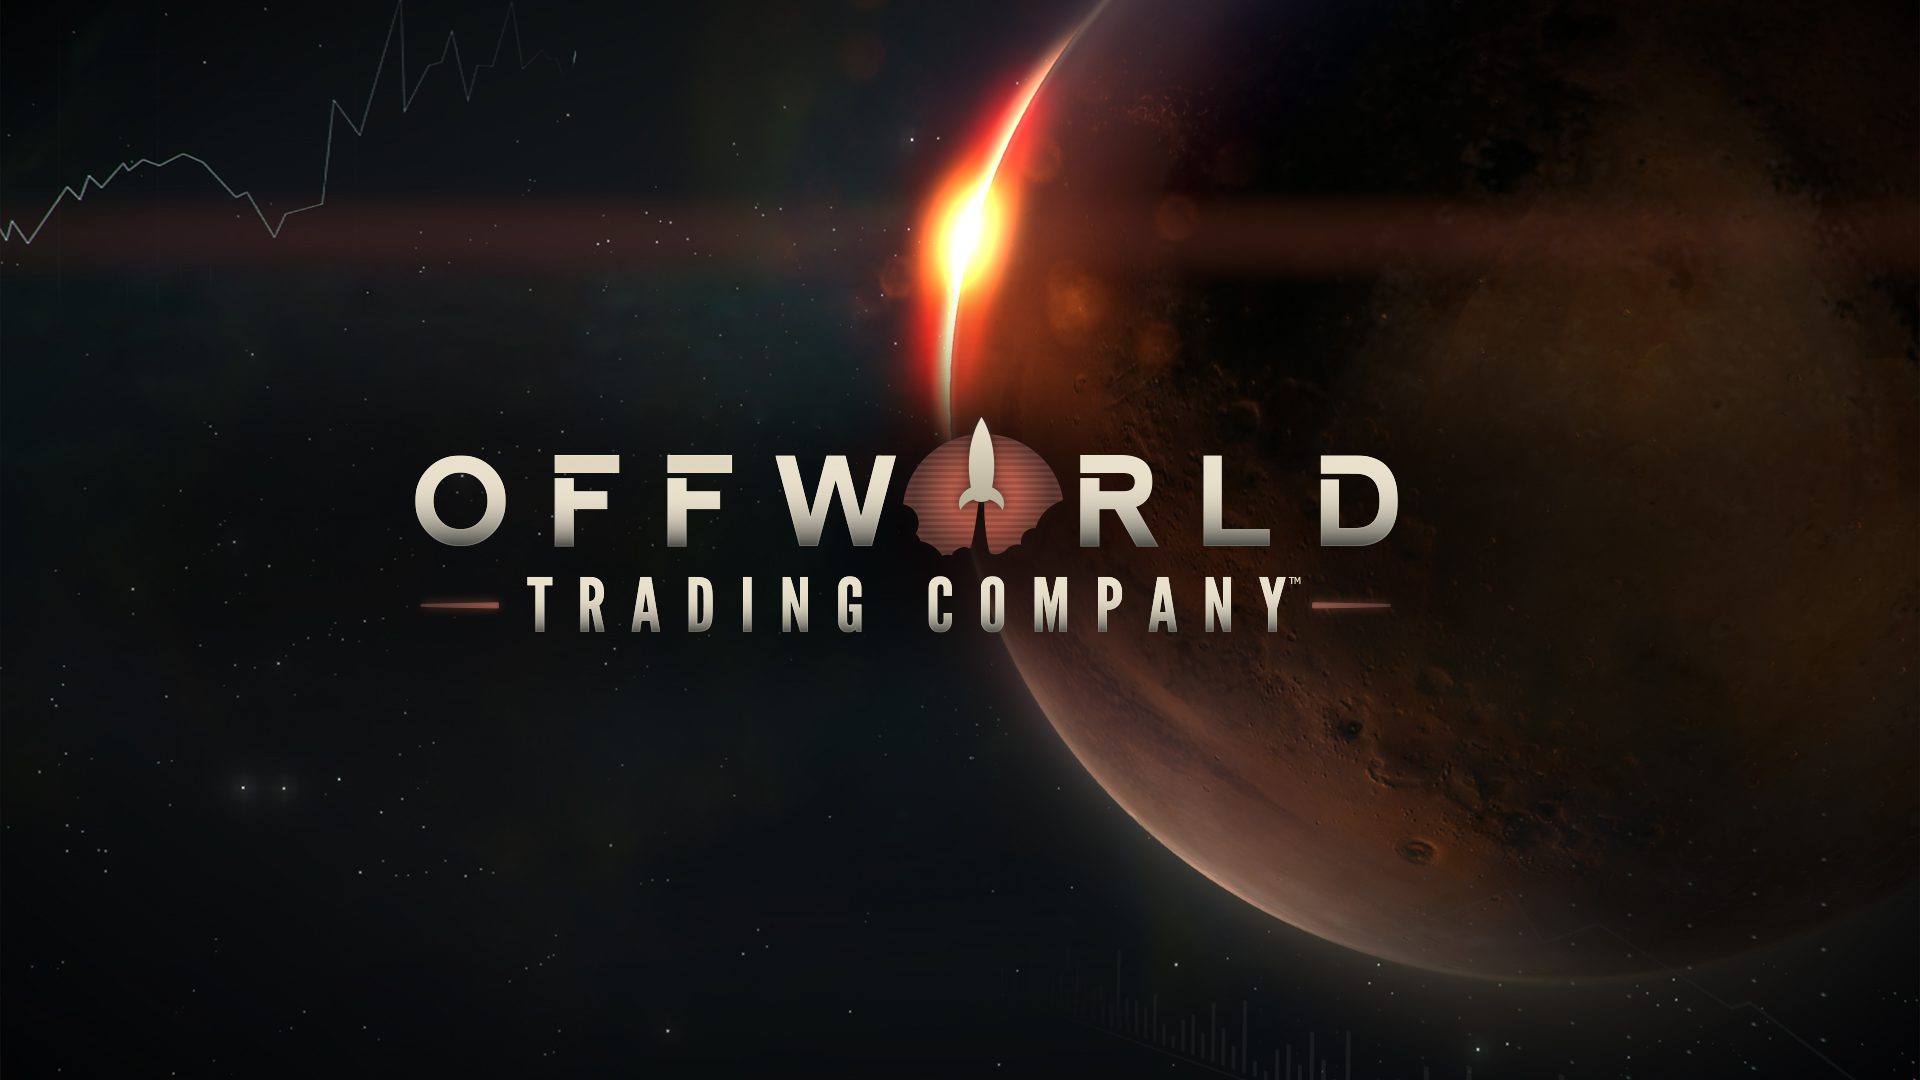 Compañía comercial Offworld